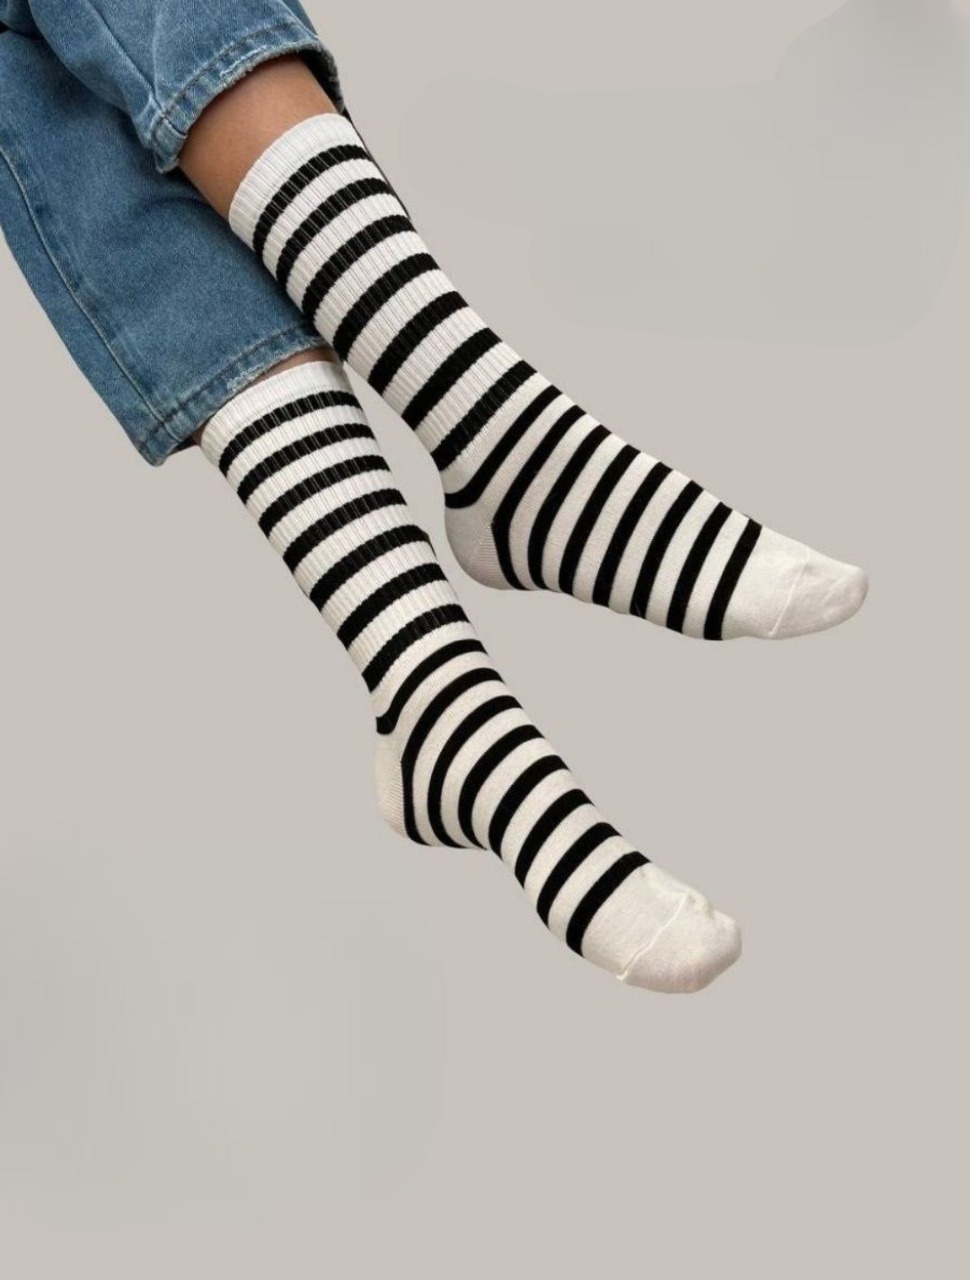 Комплект носков женских AMNHA BEALL BROSE полосатых высоких белых 36-40